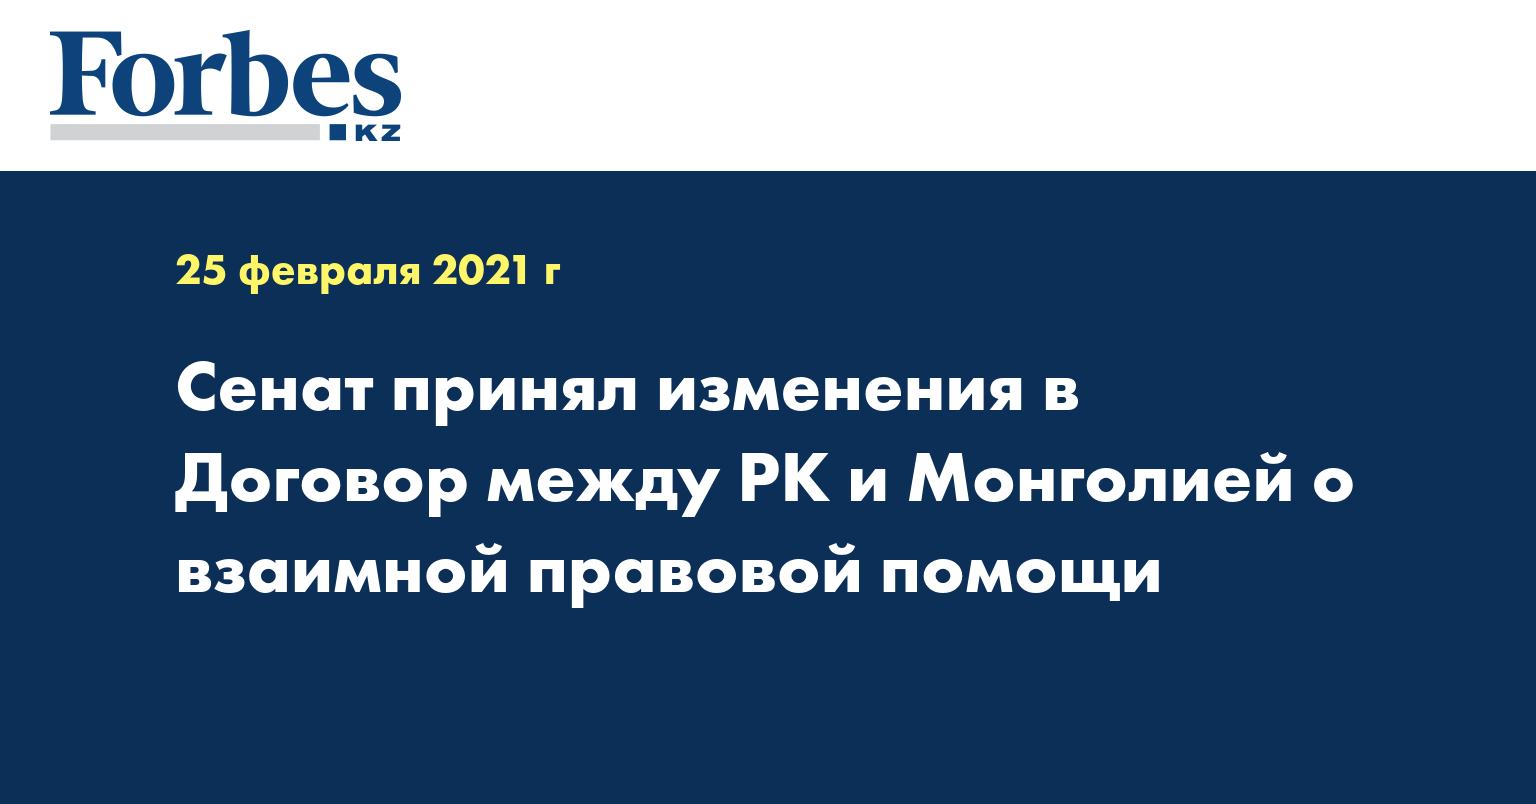 Сенат принял изменения  в Договор между РК и Монголией о взаимной правовой помощи